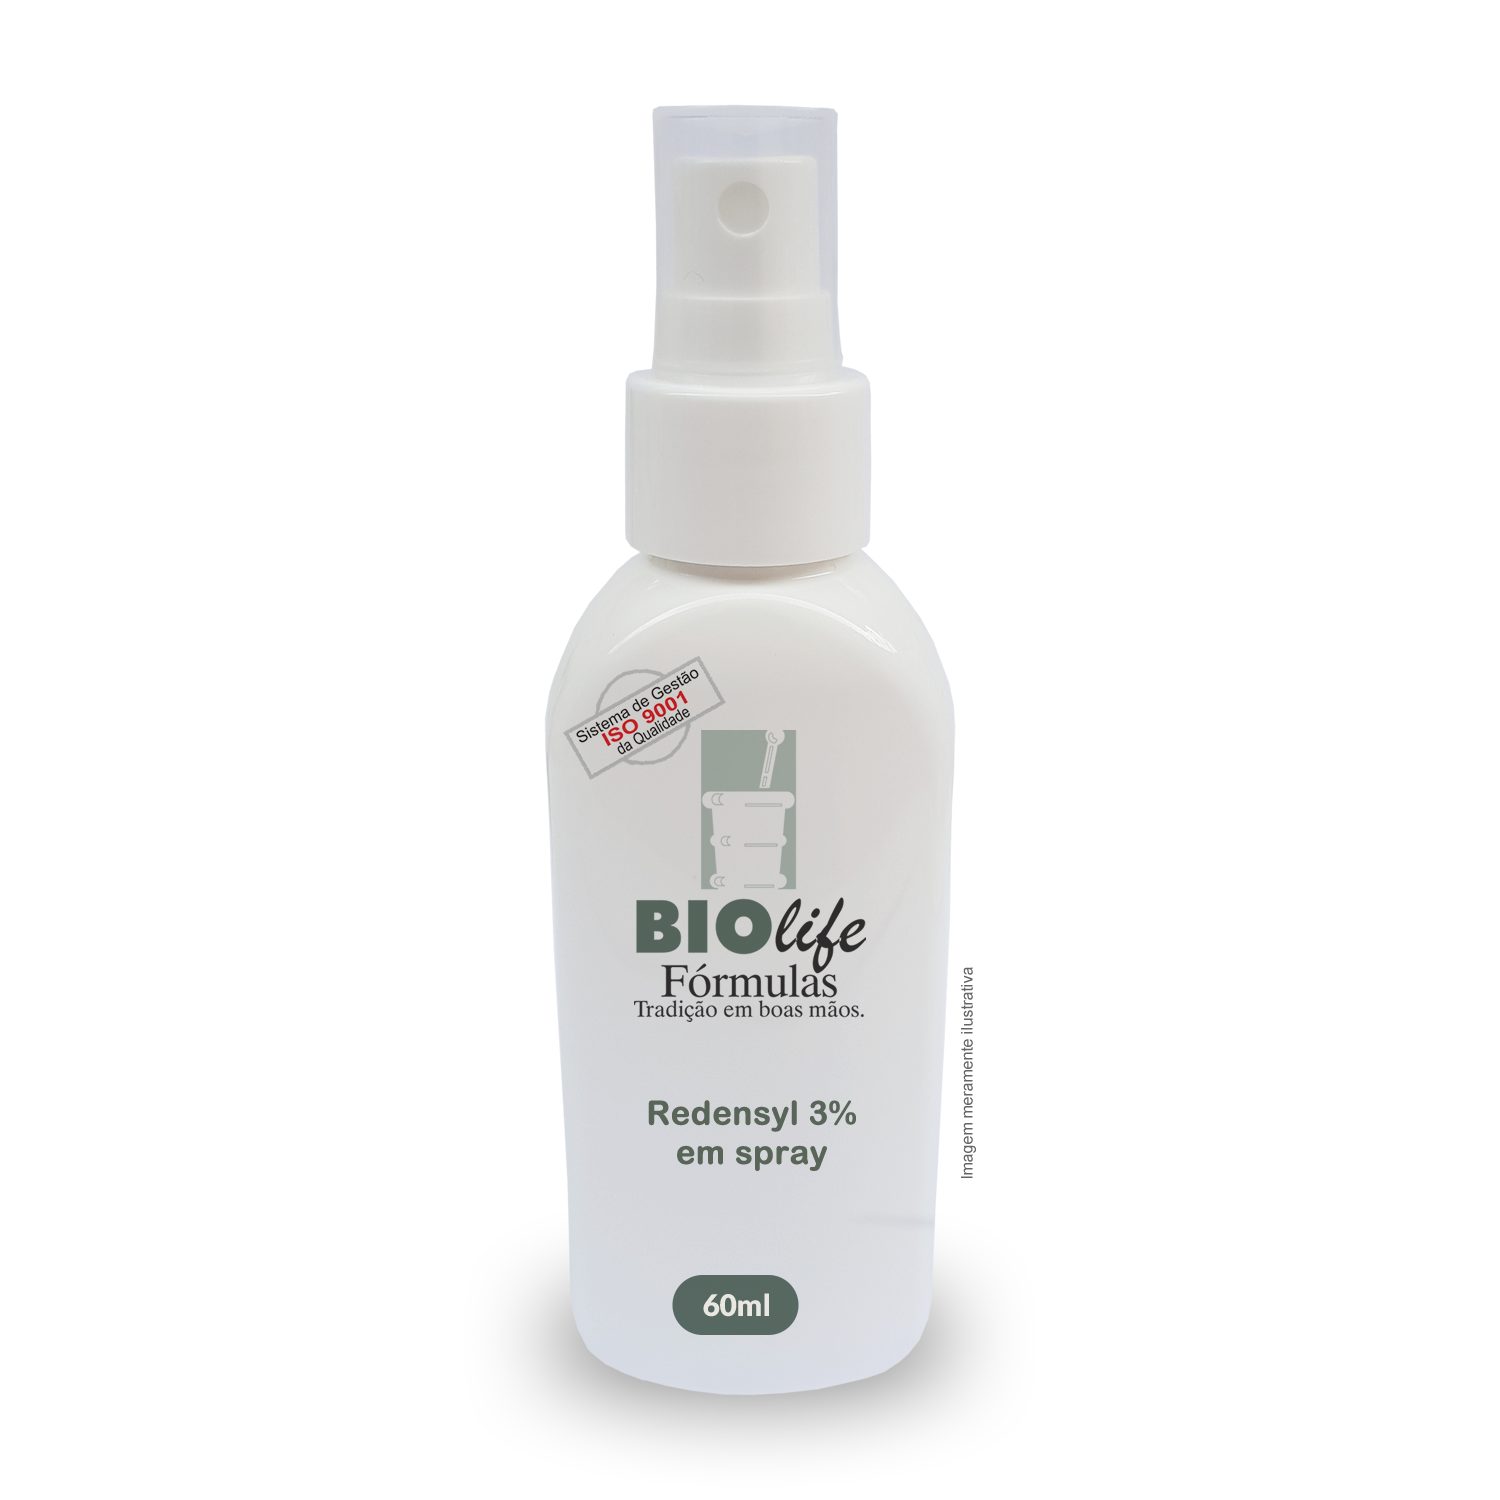 Redensyl spray com 60 mL - Antiqueda e Crescimento Capilar! - BioLife